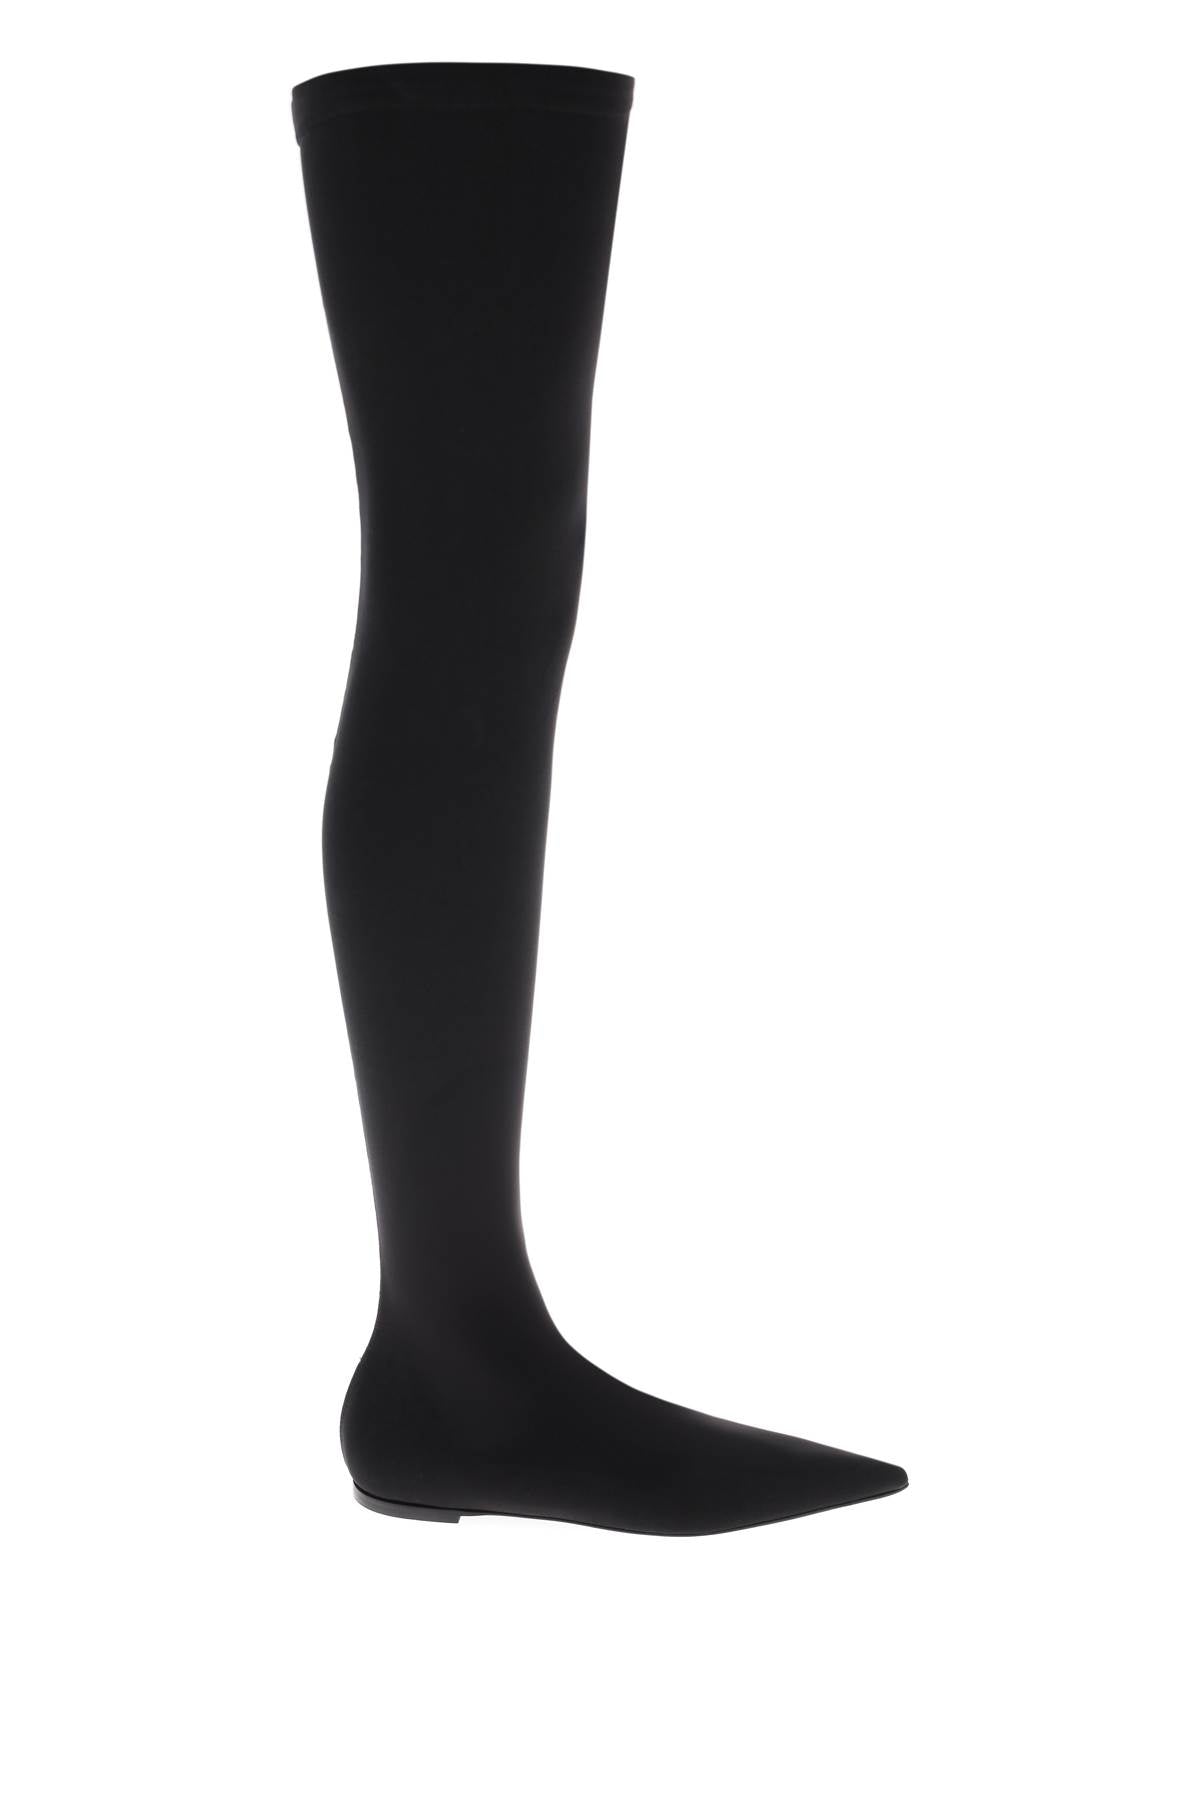 Dolce & gabbana stretch jersey thigh-high boots-0